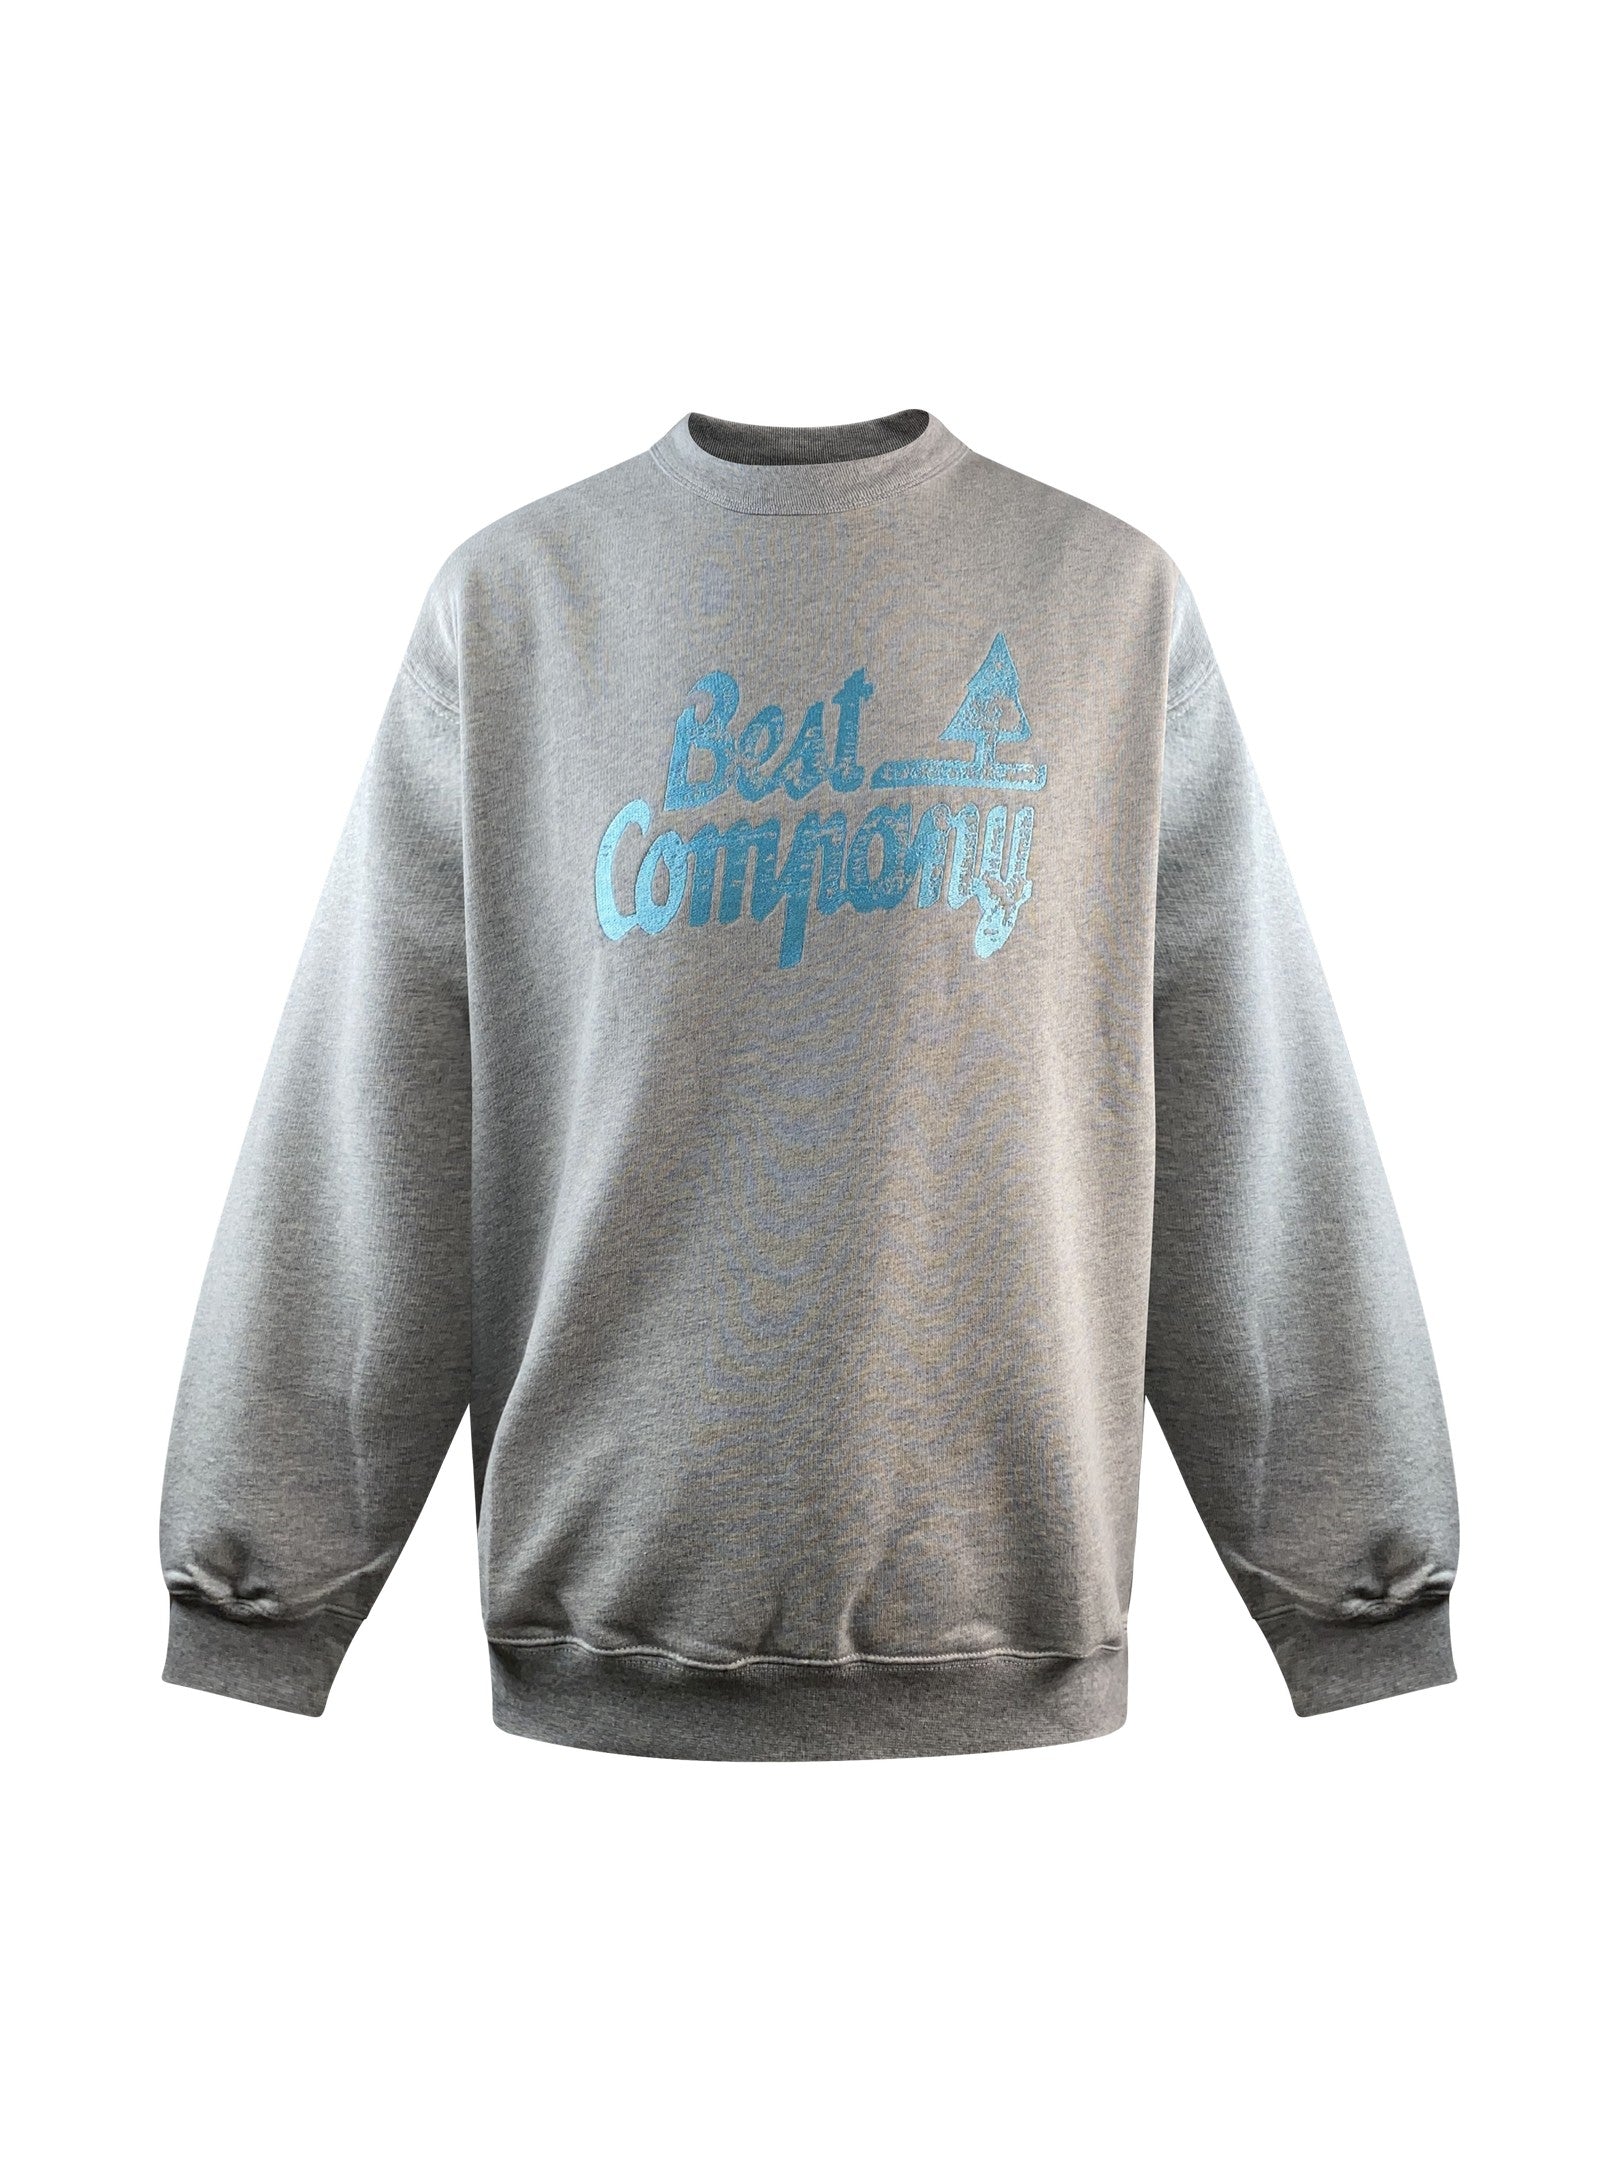 Best Company Sweater "Sweat Logo Ruff" -greySweatshirt von Best Company.  Details:   Langarm und Rundhalsausschnitt Passform: Casual  Material: 100% Baumwolle Pflegehinweise: 40 ° Maschinenwäsche, auf links wasc